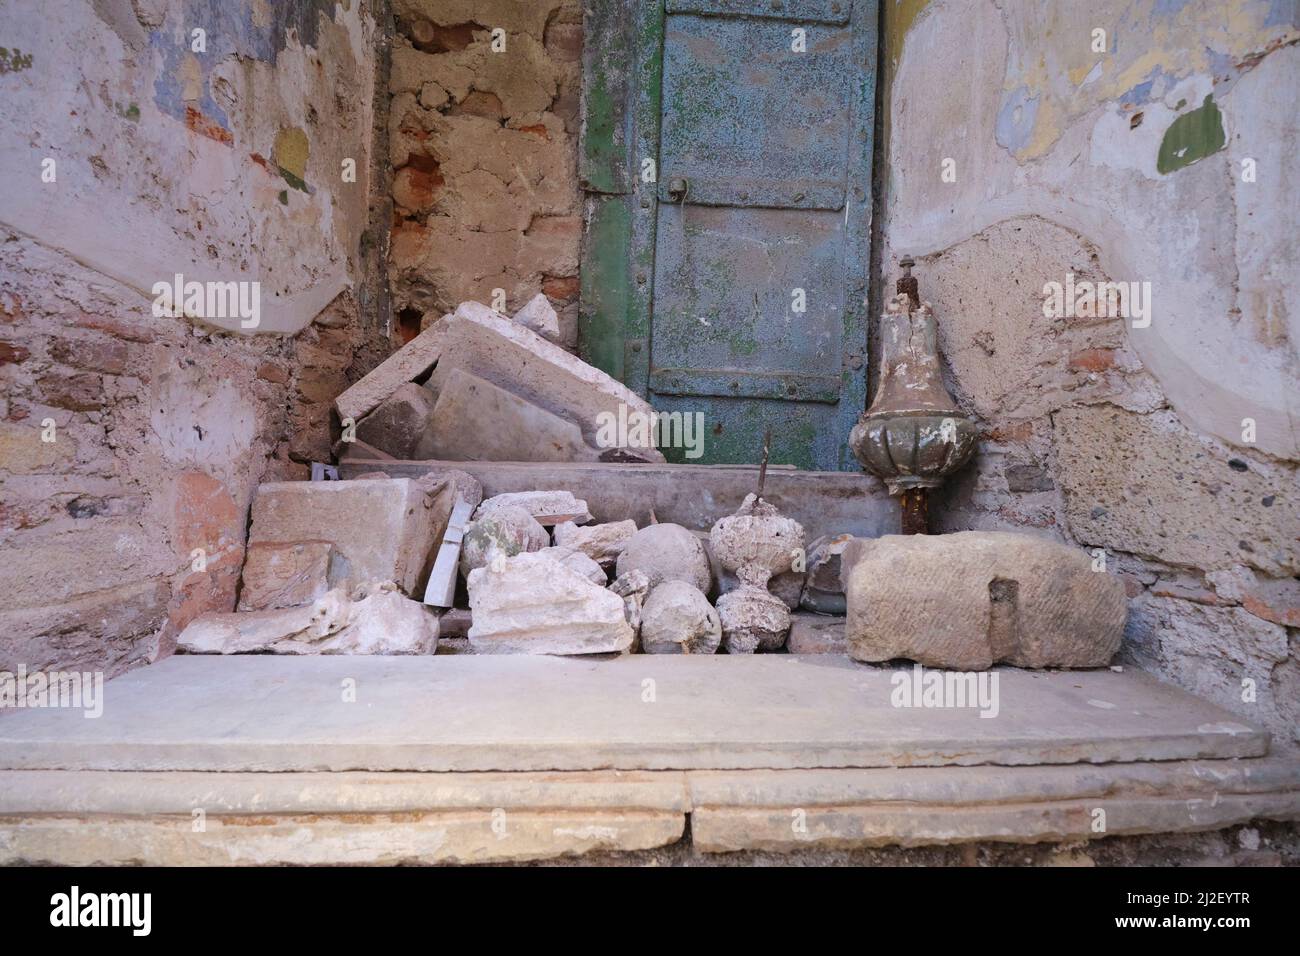 Quelques artefacts recueillis et stockés dans une alcôve. Aux ruines de la synagogue Hevra à Izmir, Turquie. Banque D'Images